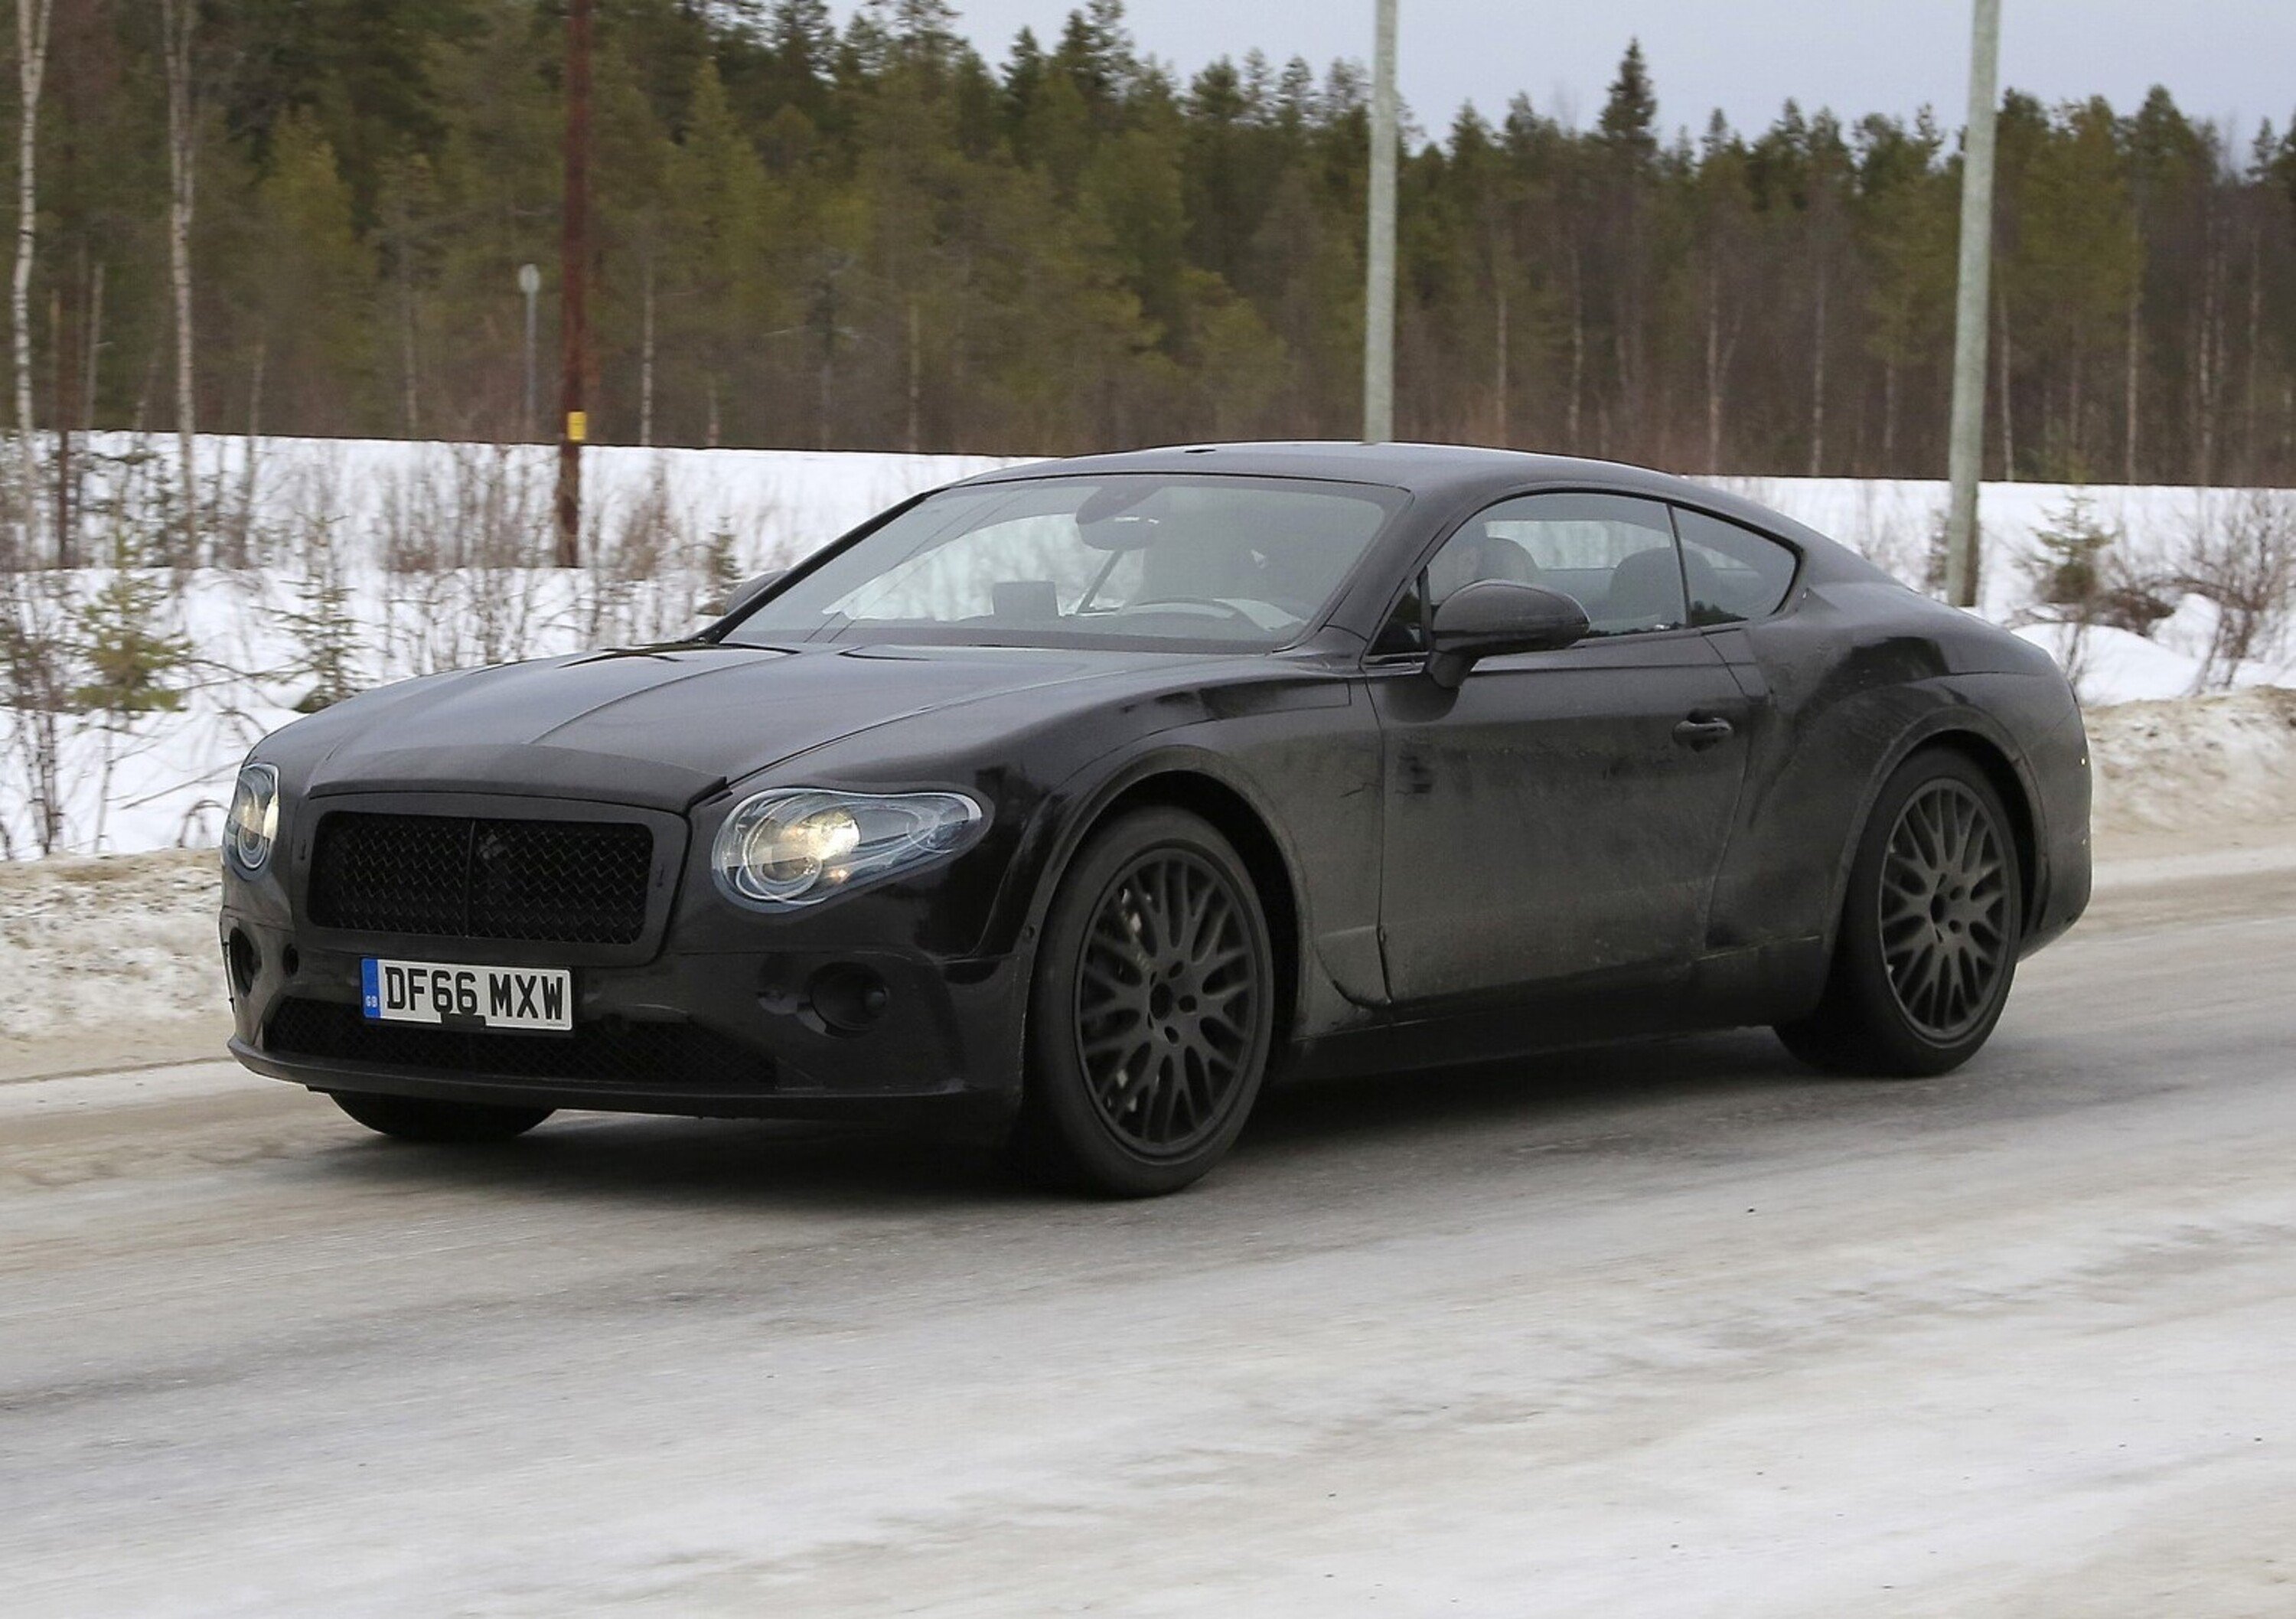 Nuova Bentley Continental GT: immagini dai collaudi sulla neve